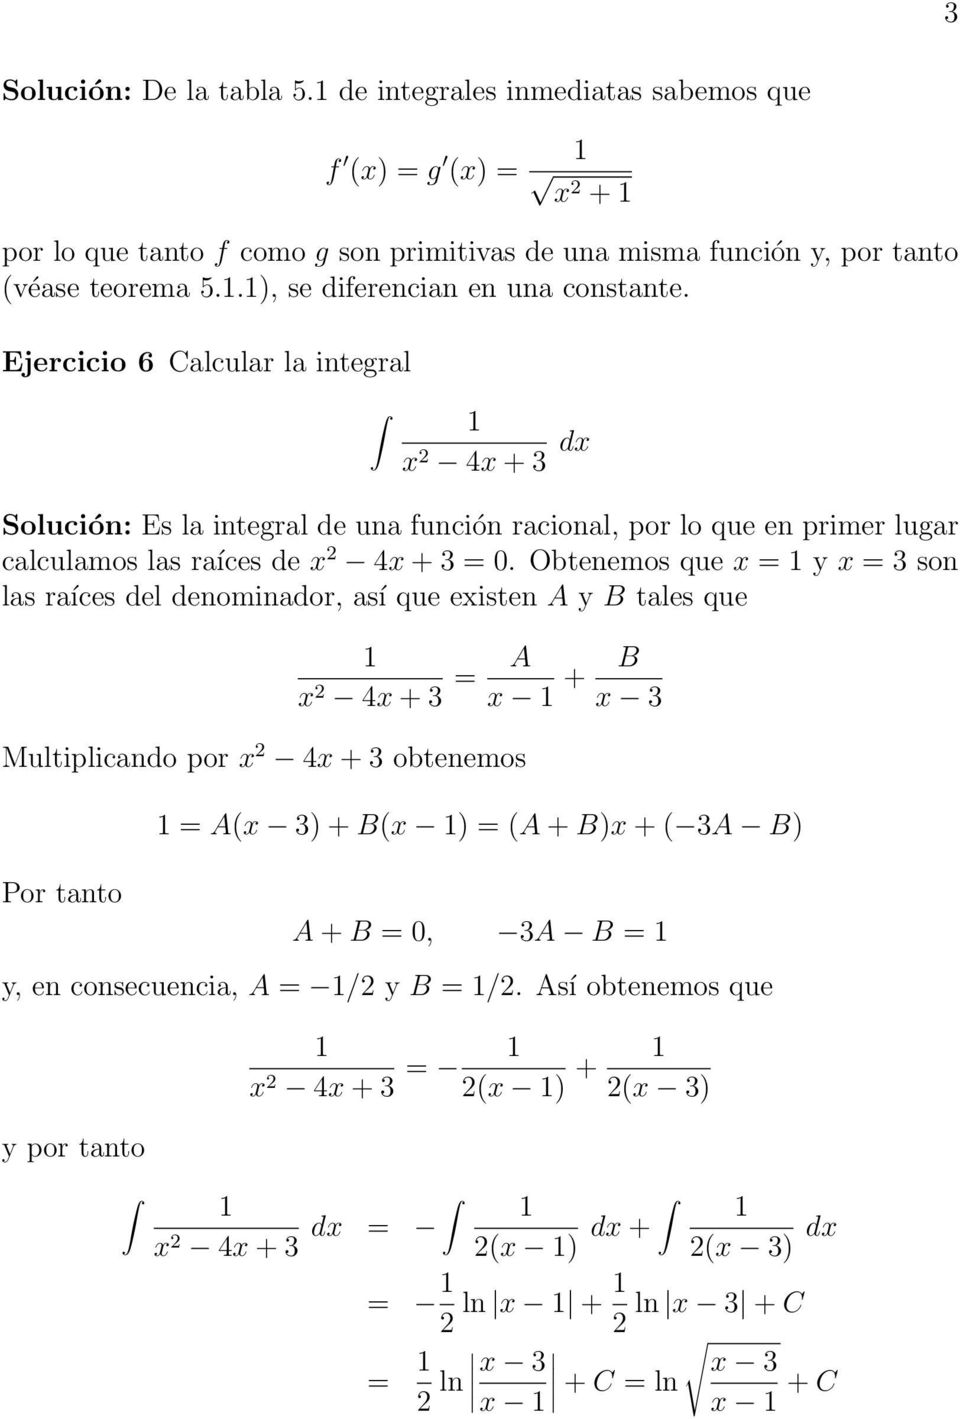 Ejercicio 6 Calcular la integral x 4x +3 dx Solución: Es la integral de una función racional, por lo que en primer lugar calculamos las raíces de x 4x + 3 = 0.